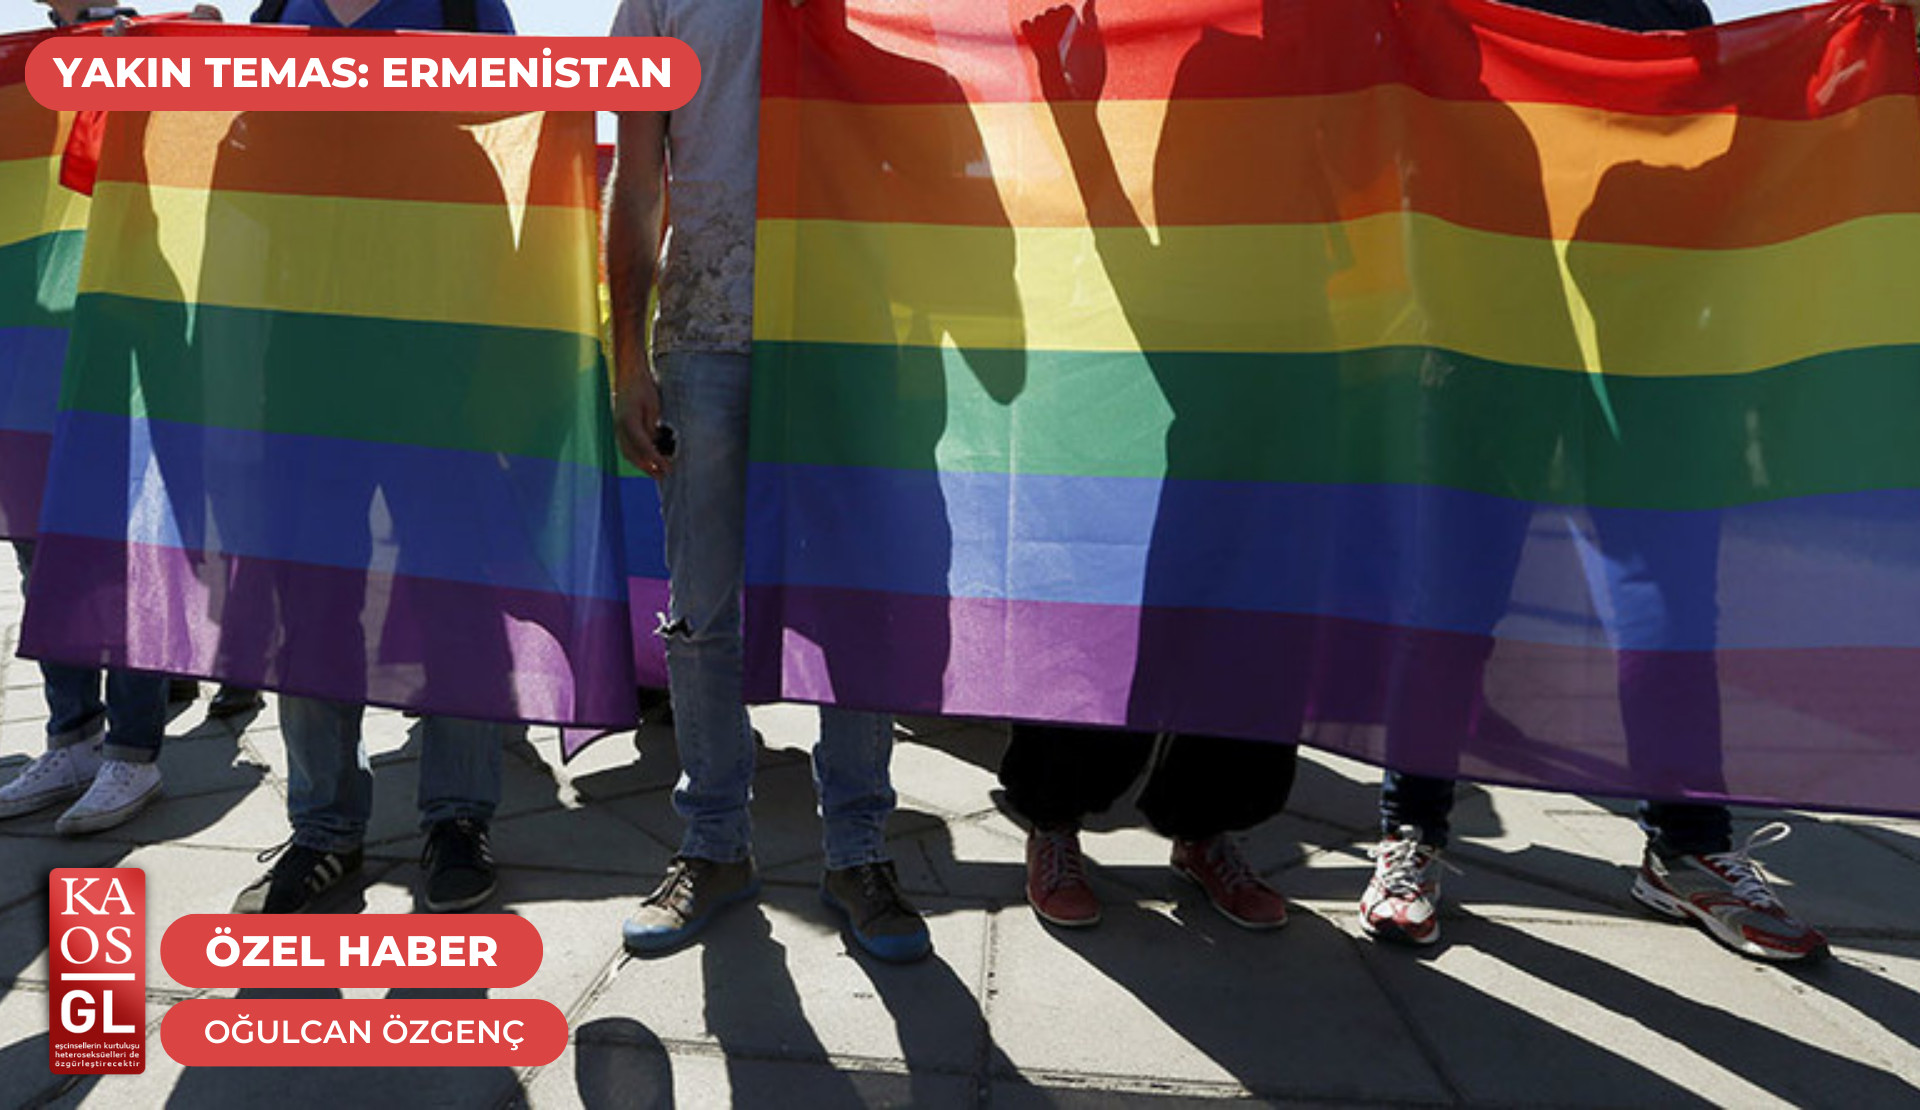 Rusya’dan ithal karşıtlık: “Ermenistan’da LGBTİ+ karşıtı hareketlerin ana hedefi hükümet ama sonuçta LGBTİ+’lar nefretin tek hedefi haline geliyor” | Kaos GL - LGBTİ+ Haber Portalı Haber